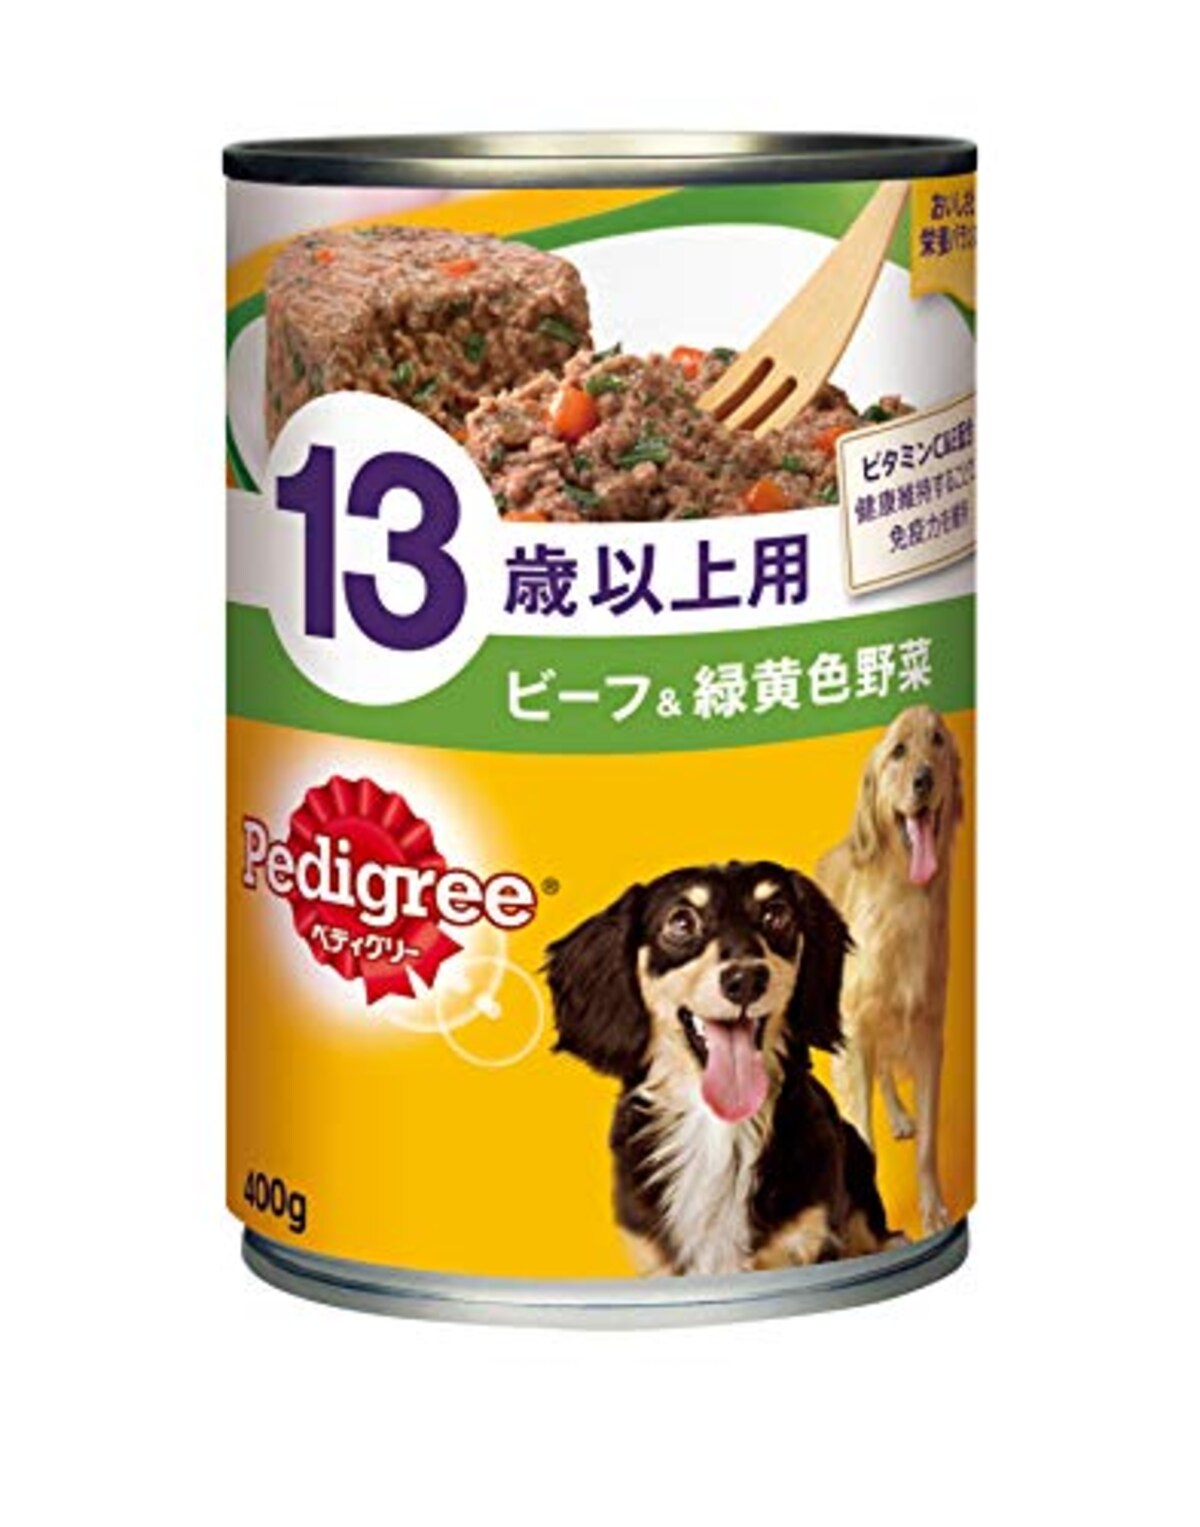 シニア犬 13歳以上用 ビーフ&緑黄色野菜 400g×24缶